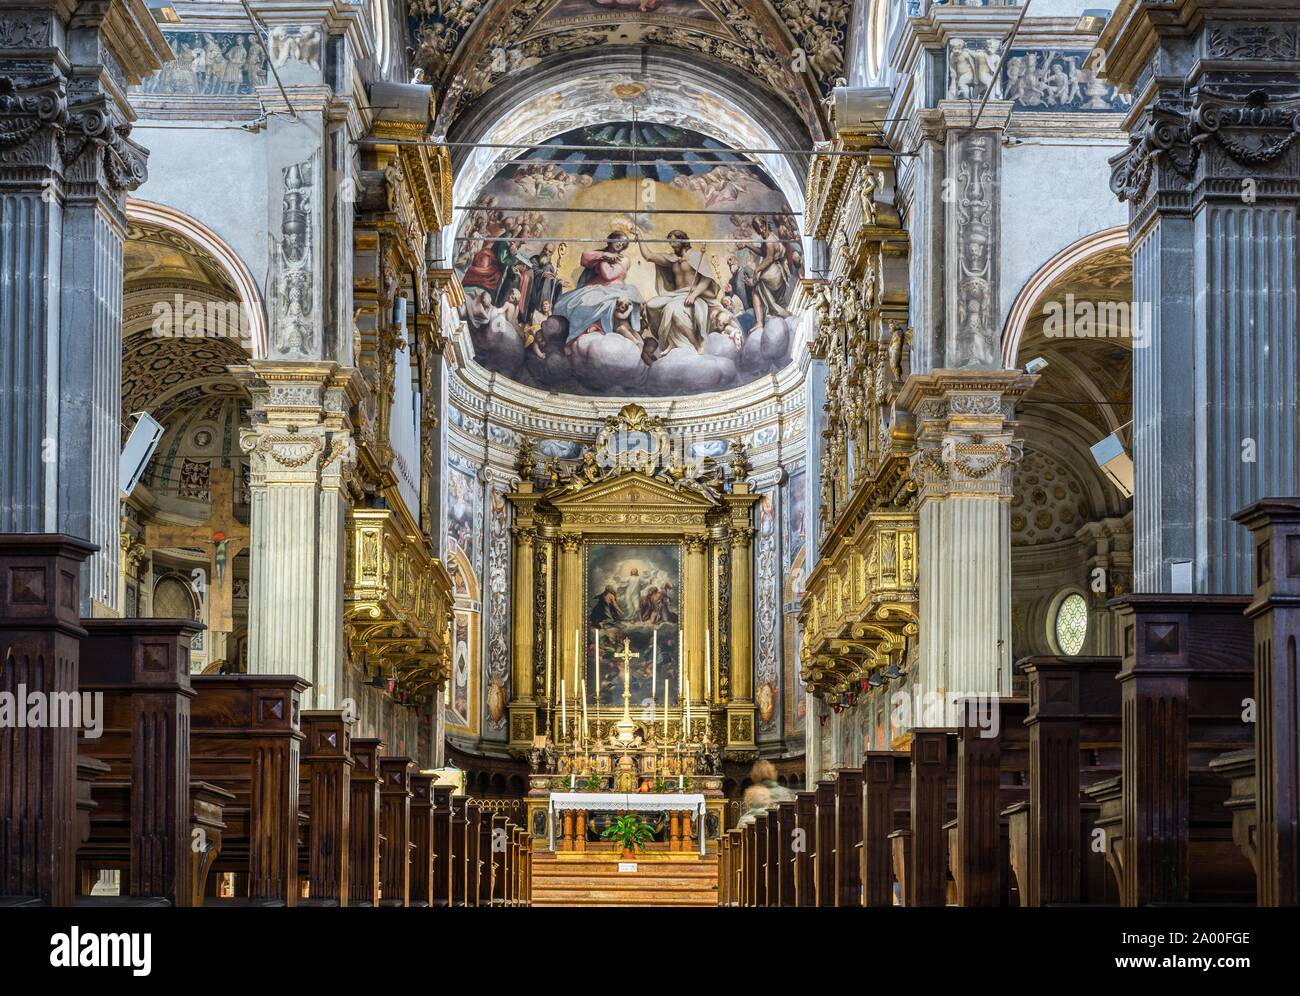 Maison longue et abside, Monastère de San Giovanni Evangelista, Parme, Emilie-Romagne, Italie Banque D'Images